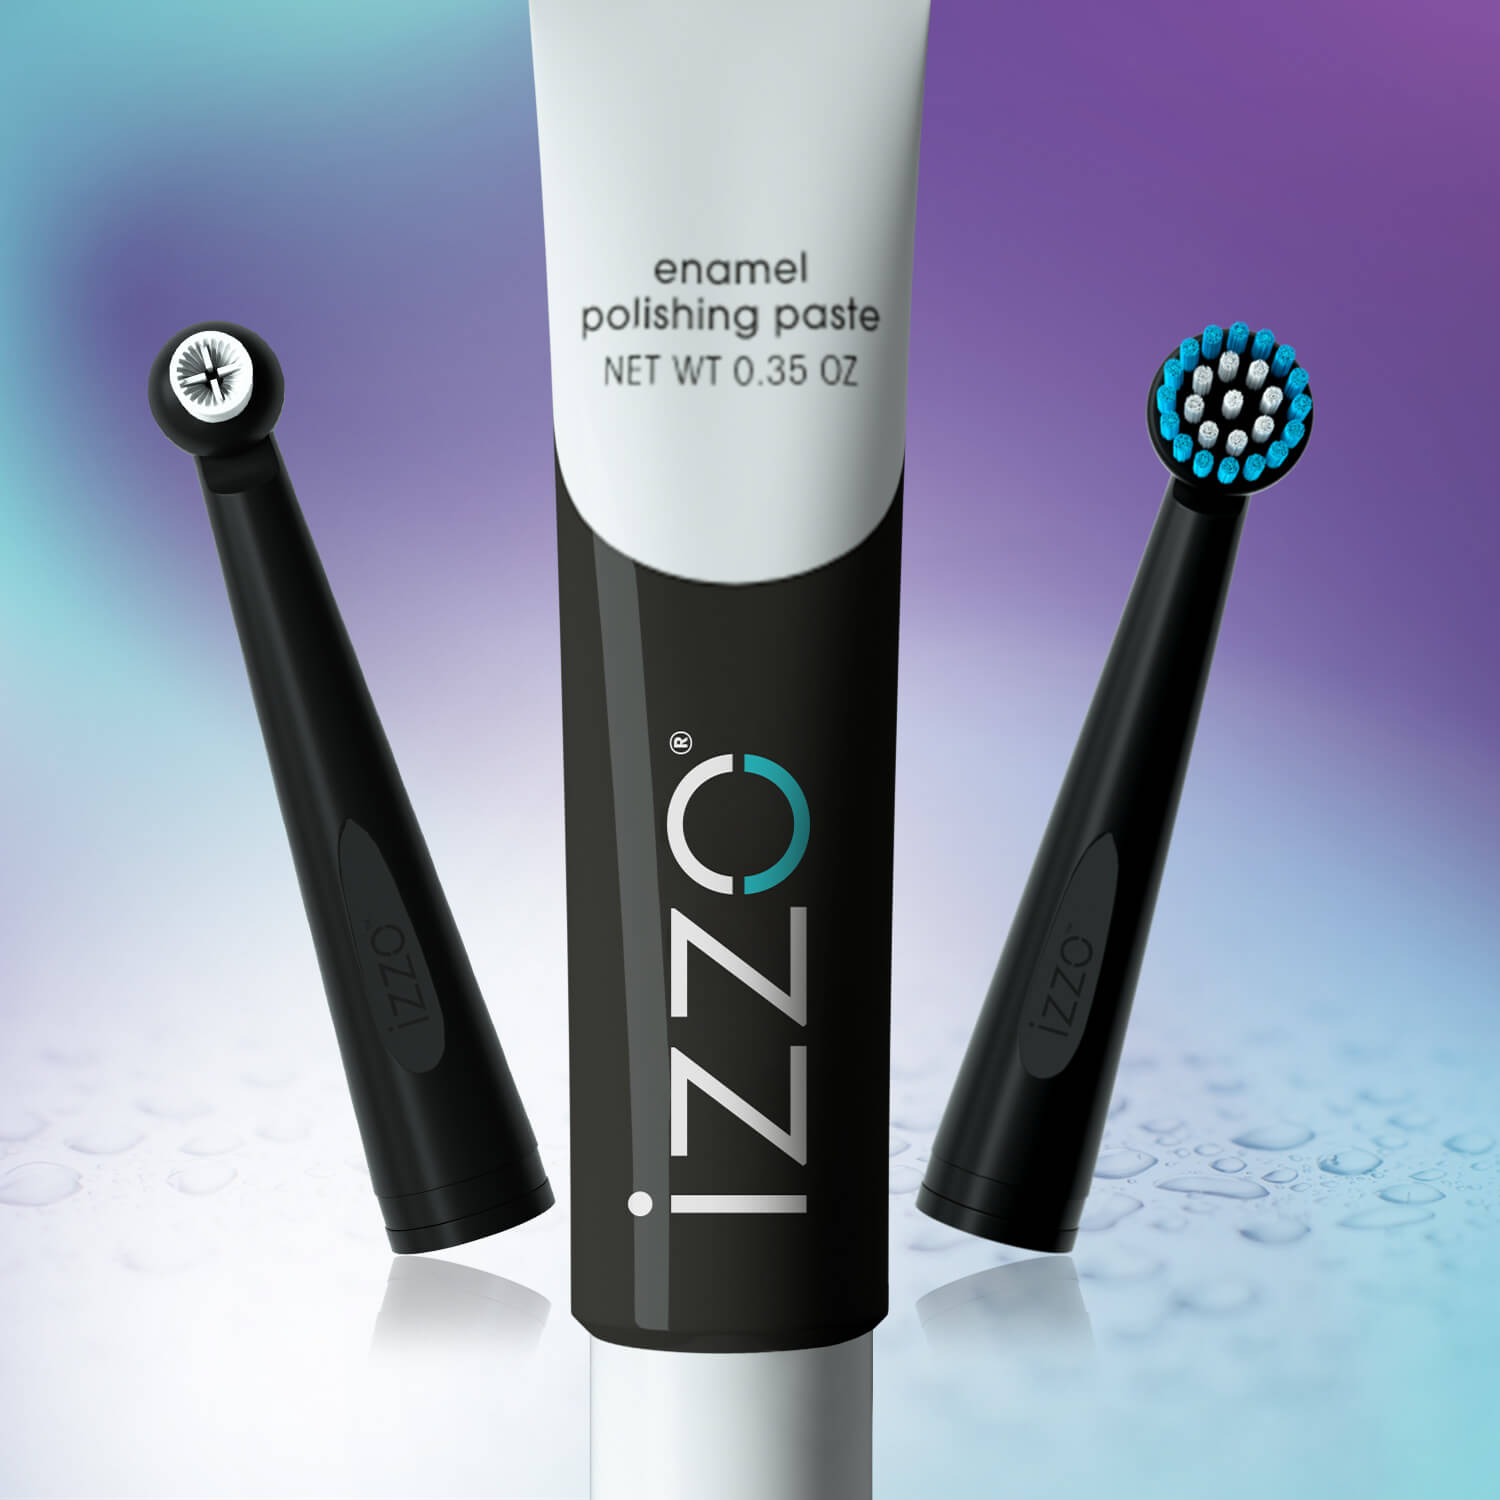 Izzo Brush and enamel polishing paste